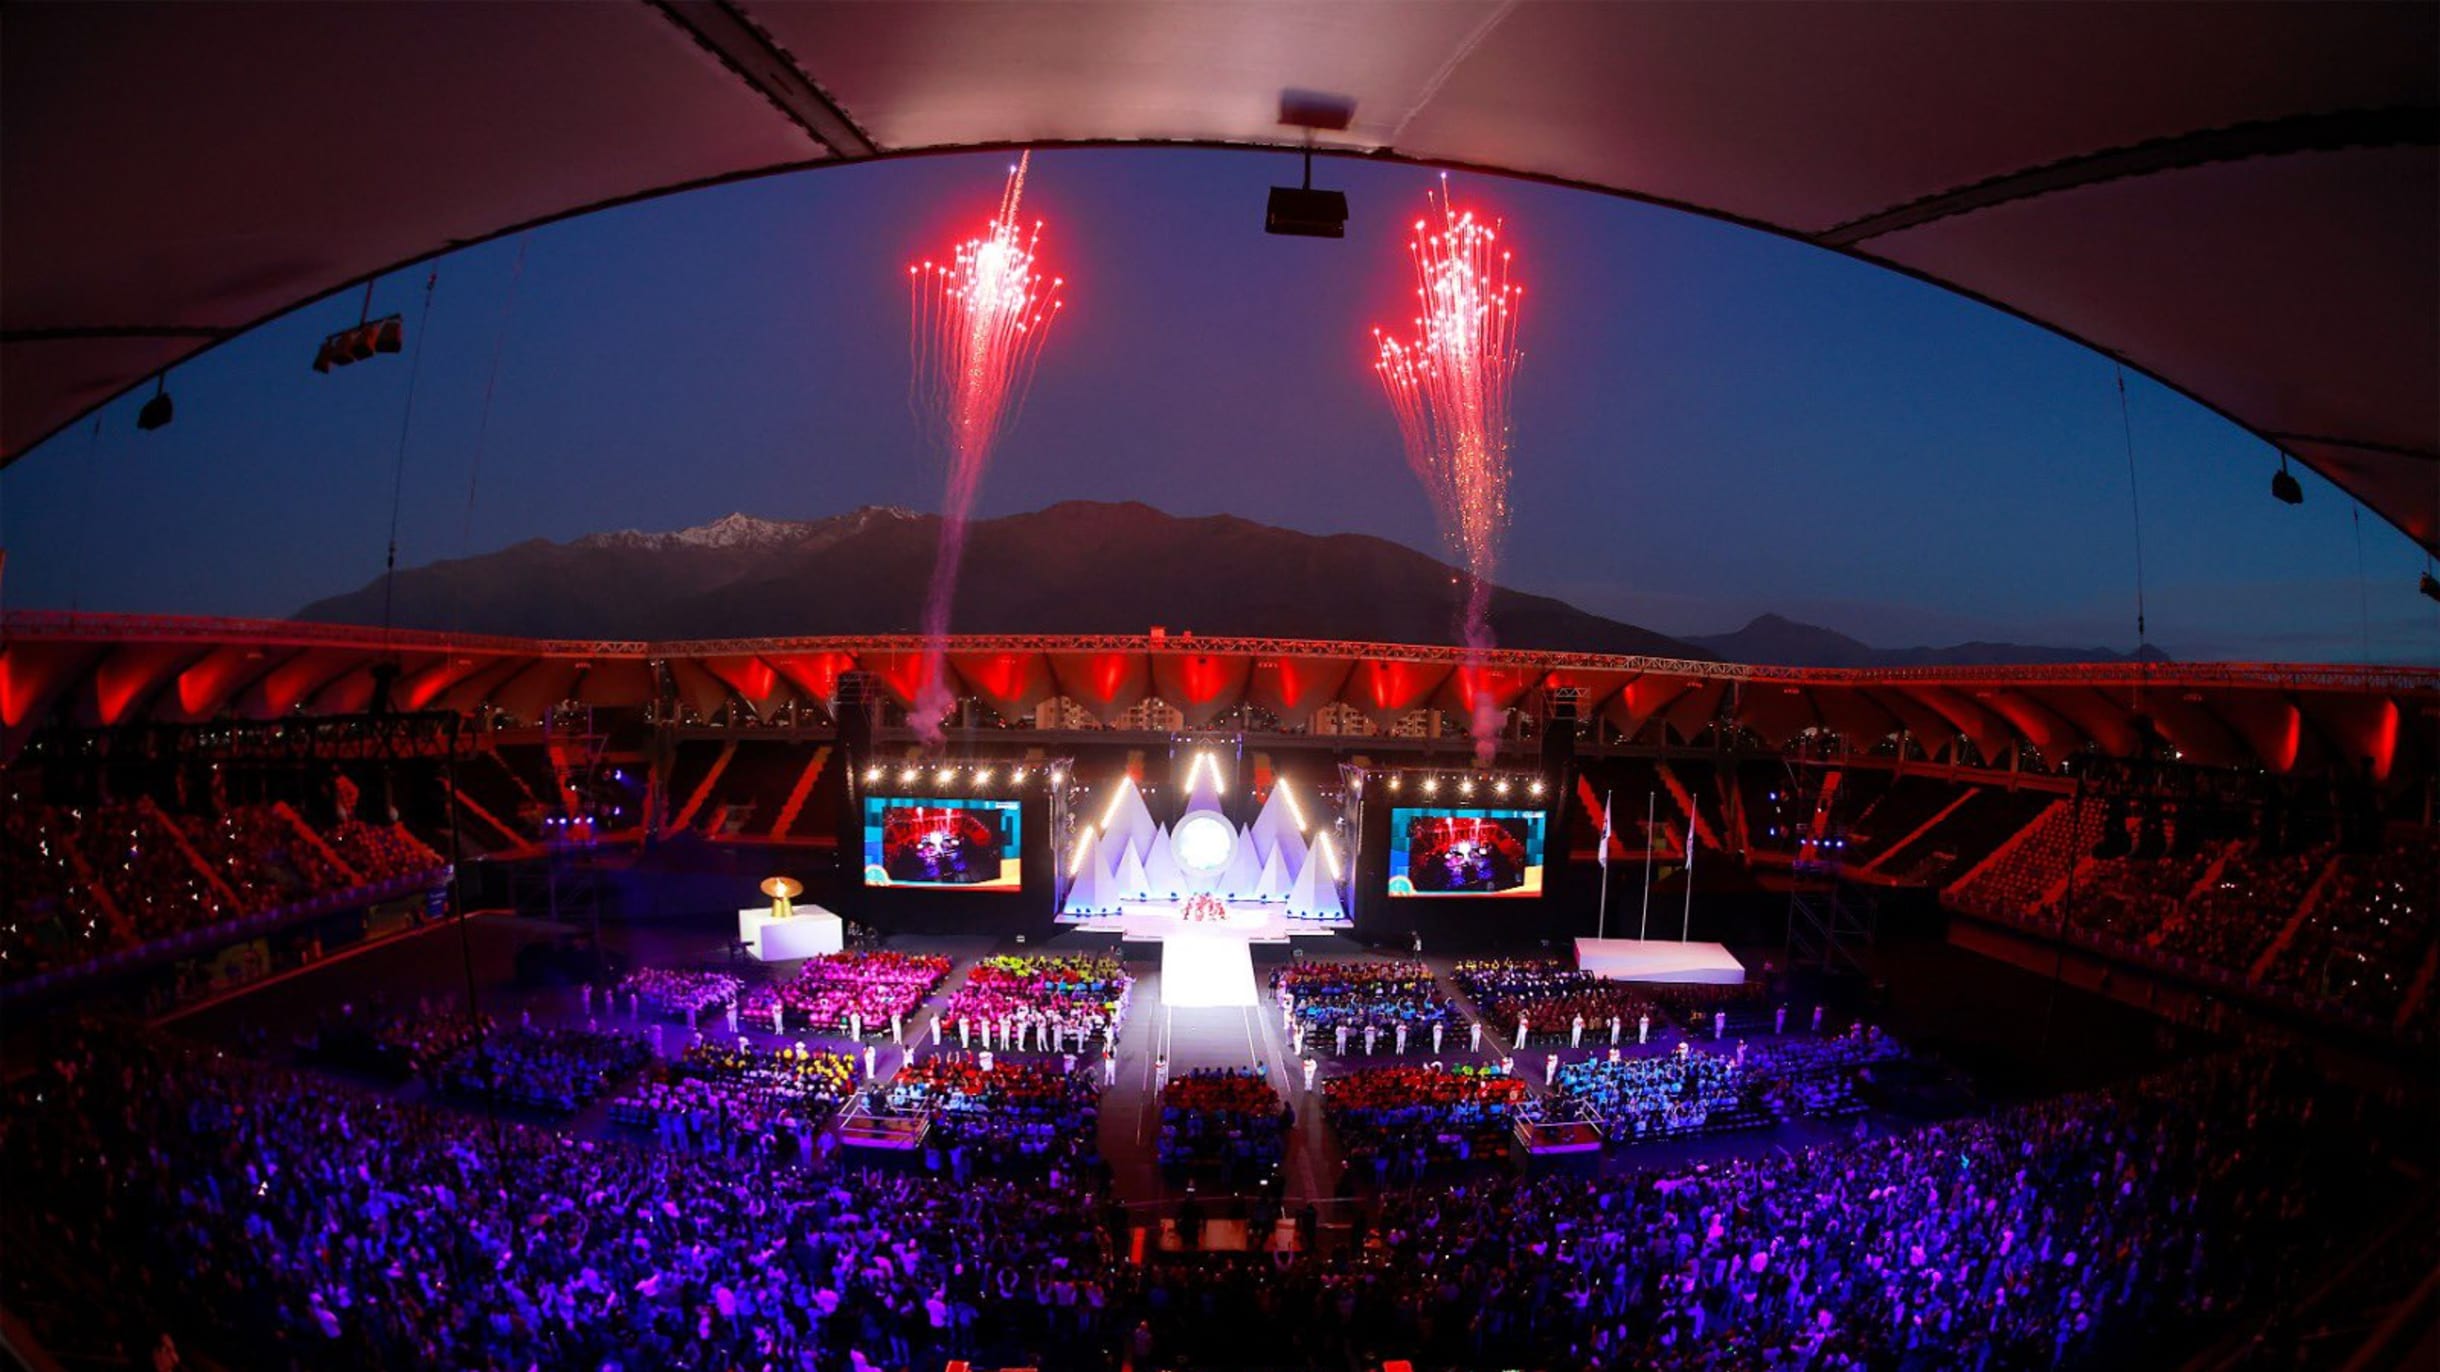 Cinco músicas marcantes na história dos Jogos Olímpicos